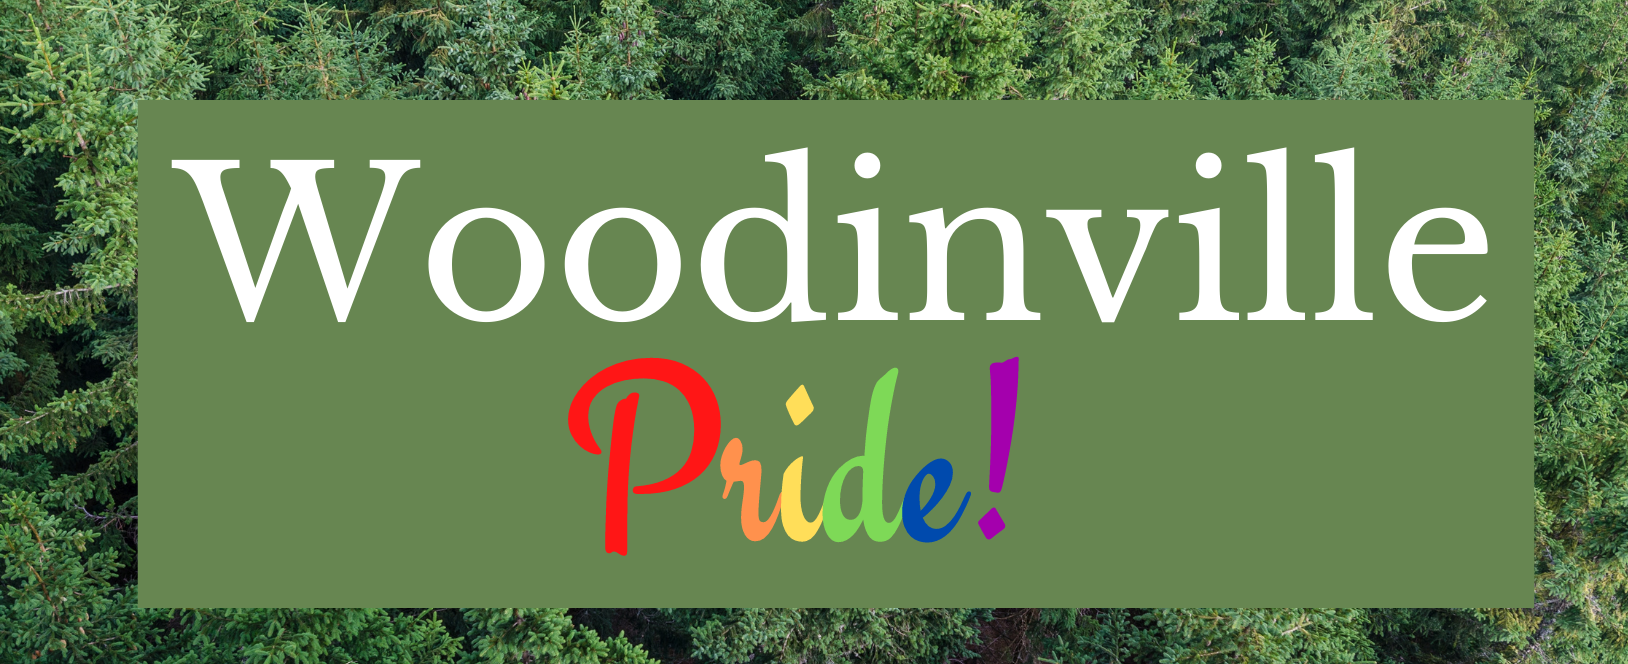 Woodinville Pride